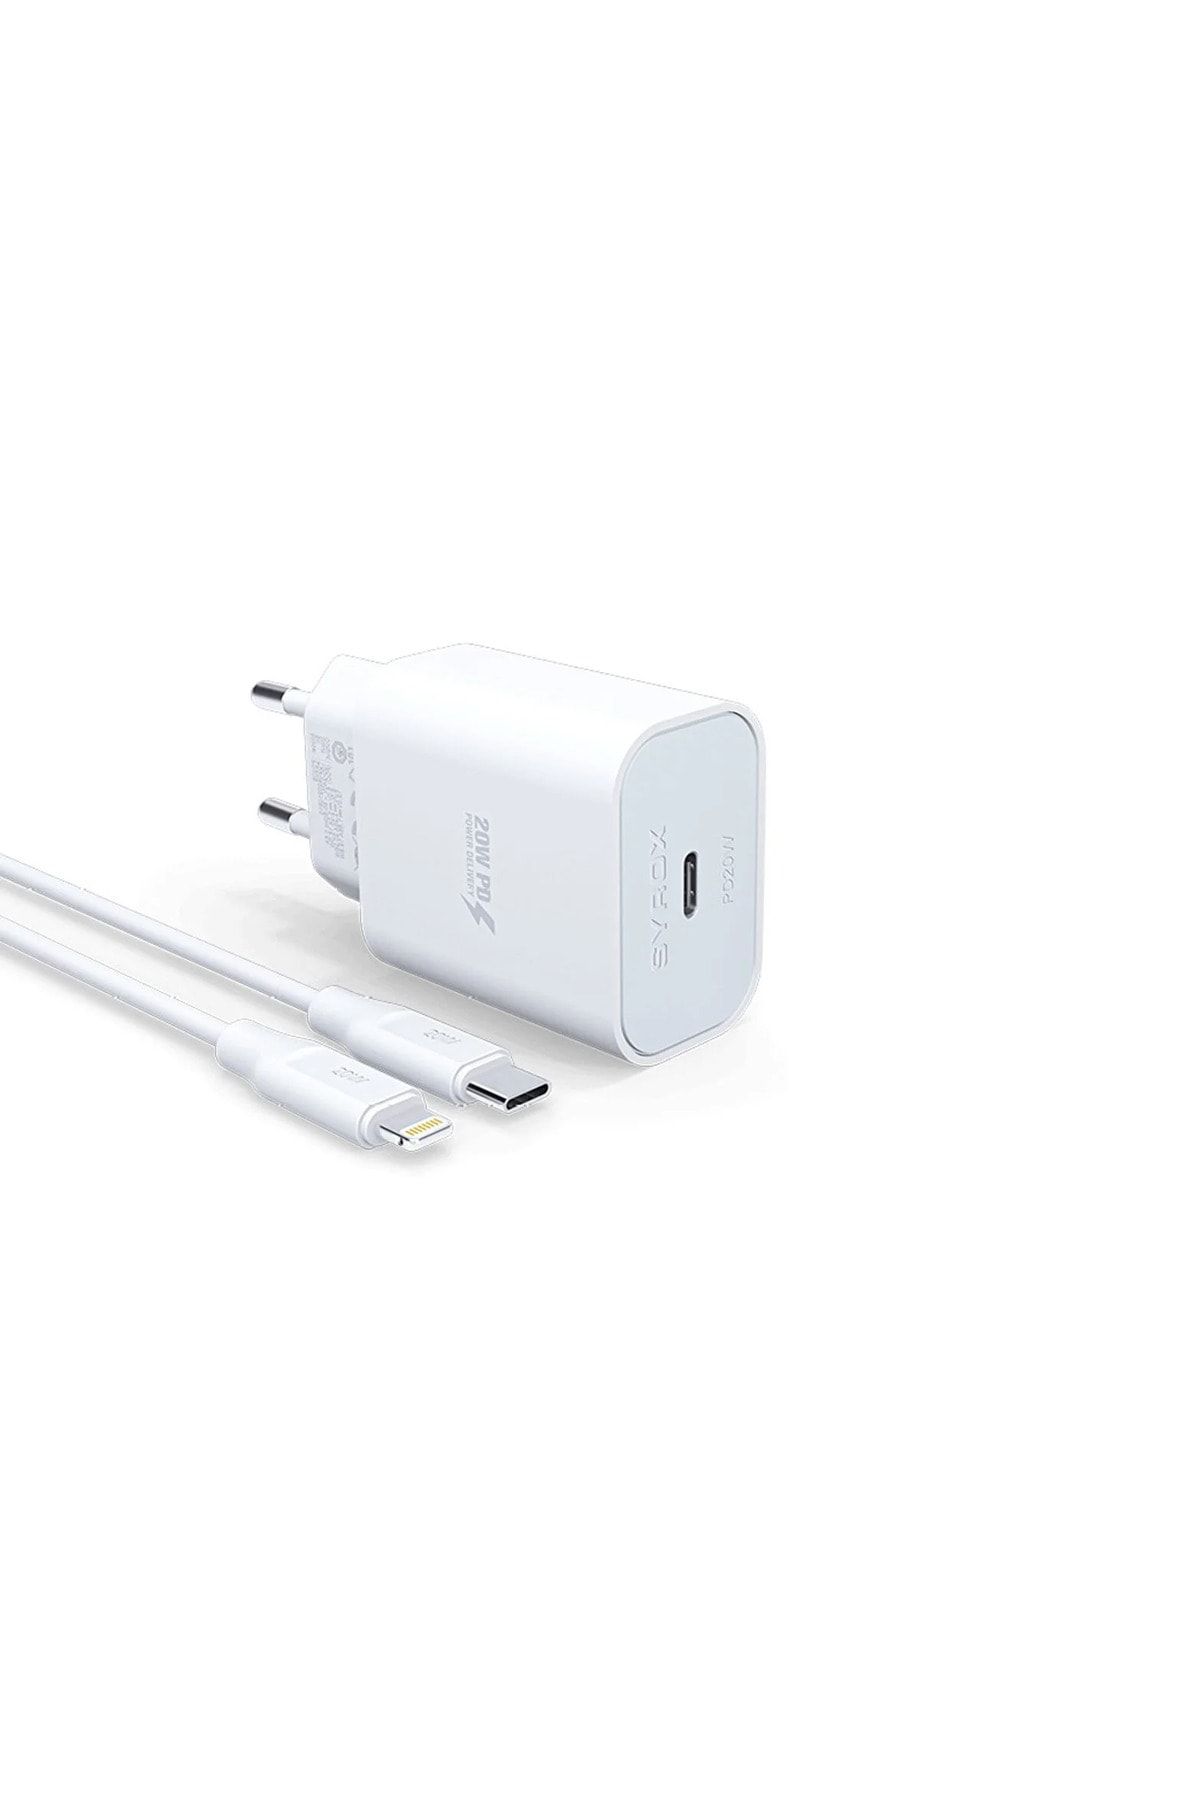 Syrox Apple Iphone X Uyumlu Hızlı Şarj Cihazı Lightning 20w Şarj Aleti Seti